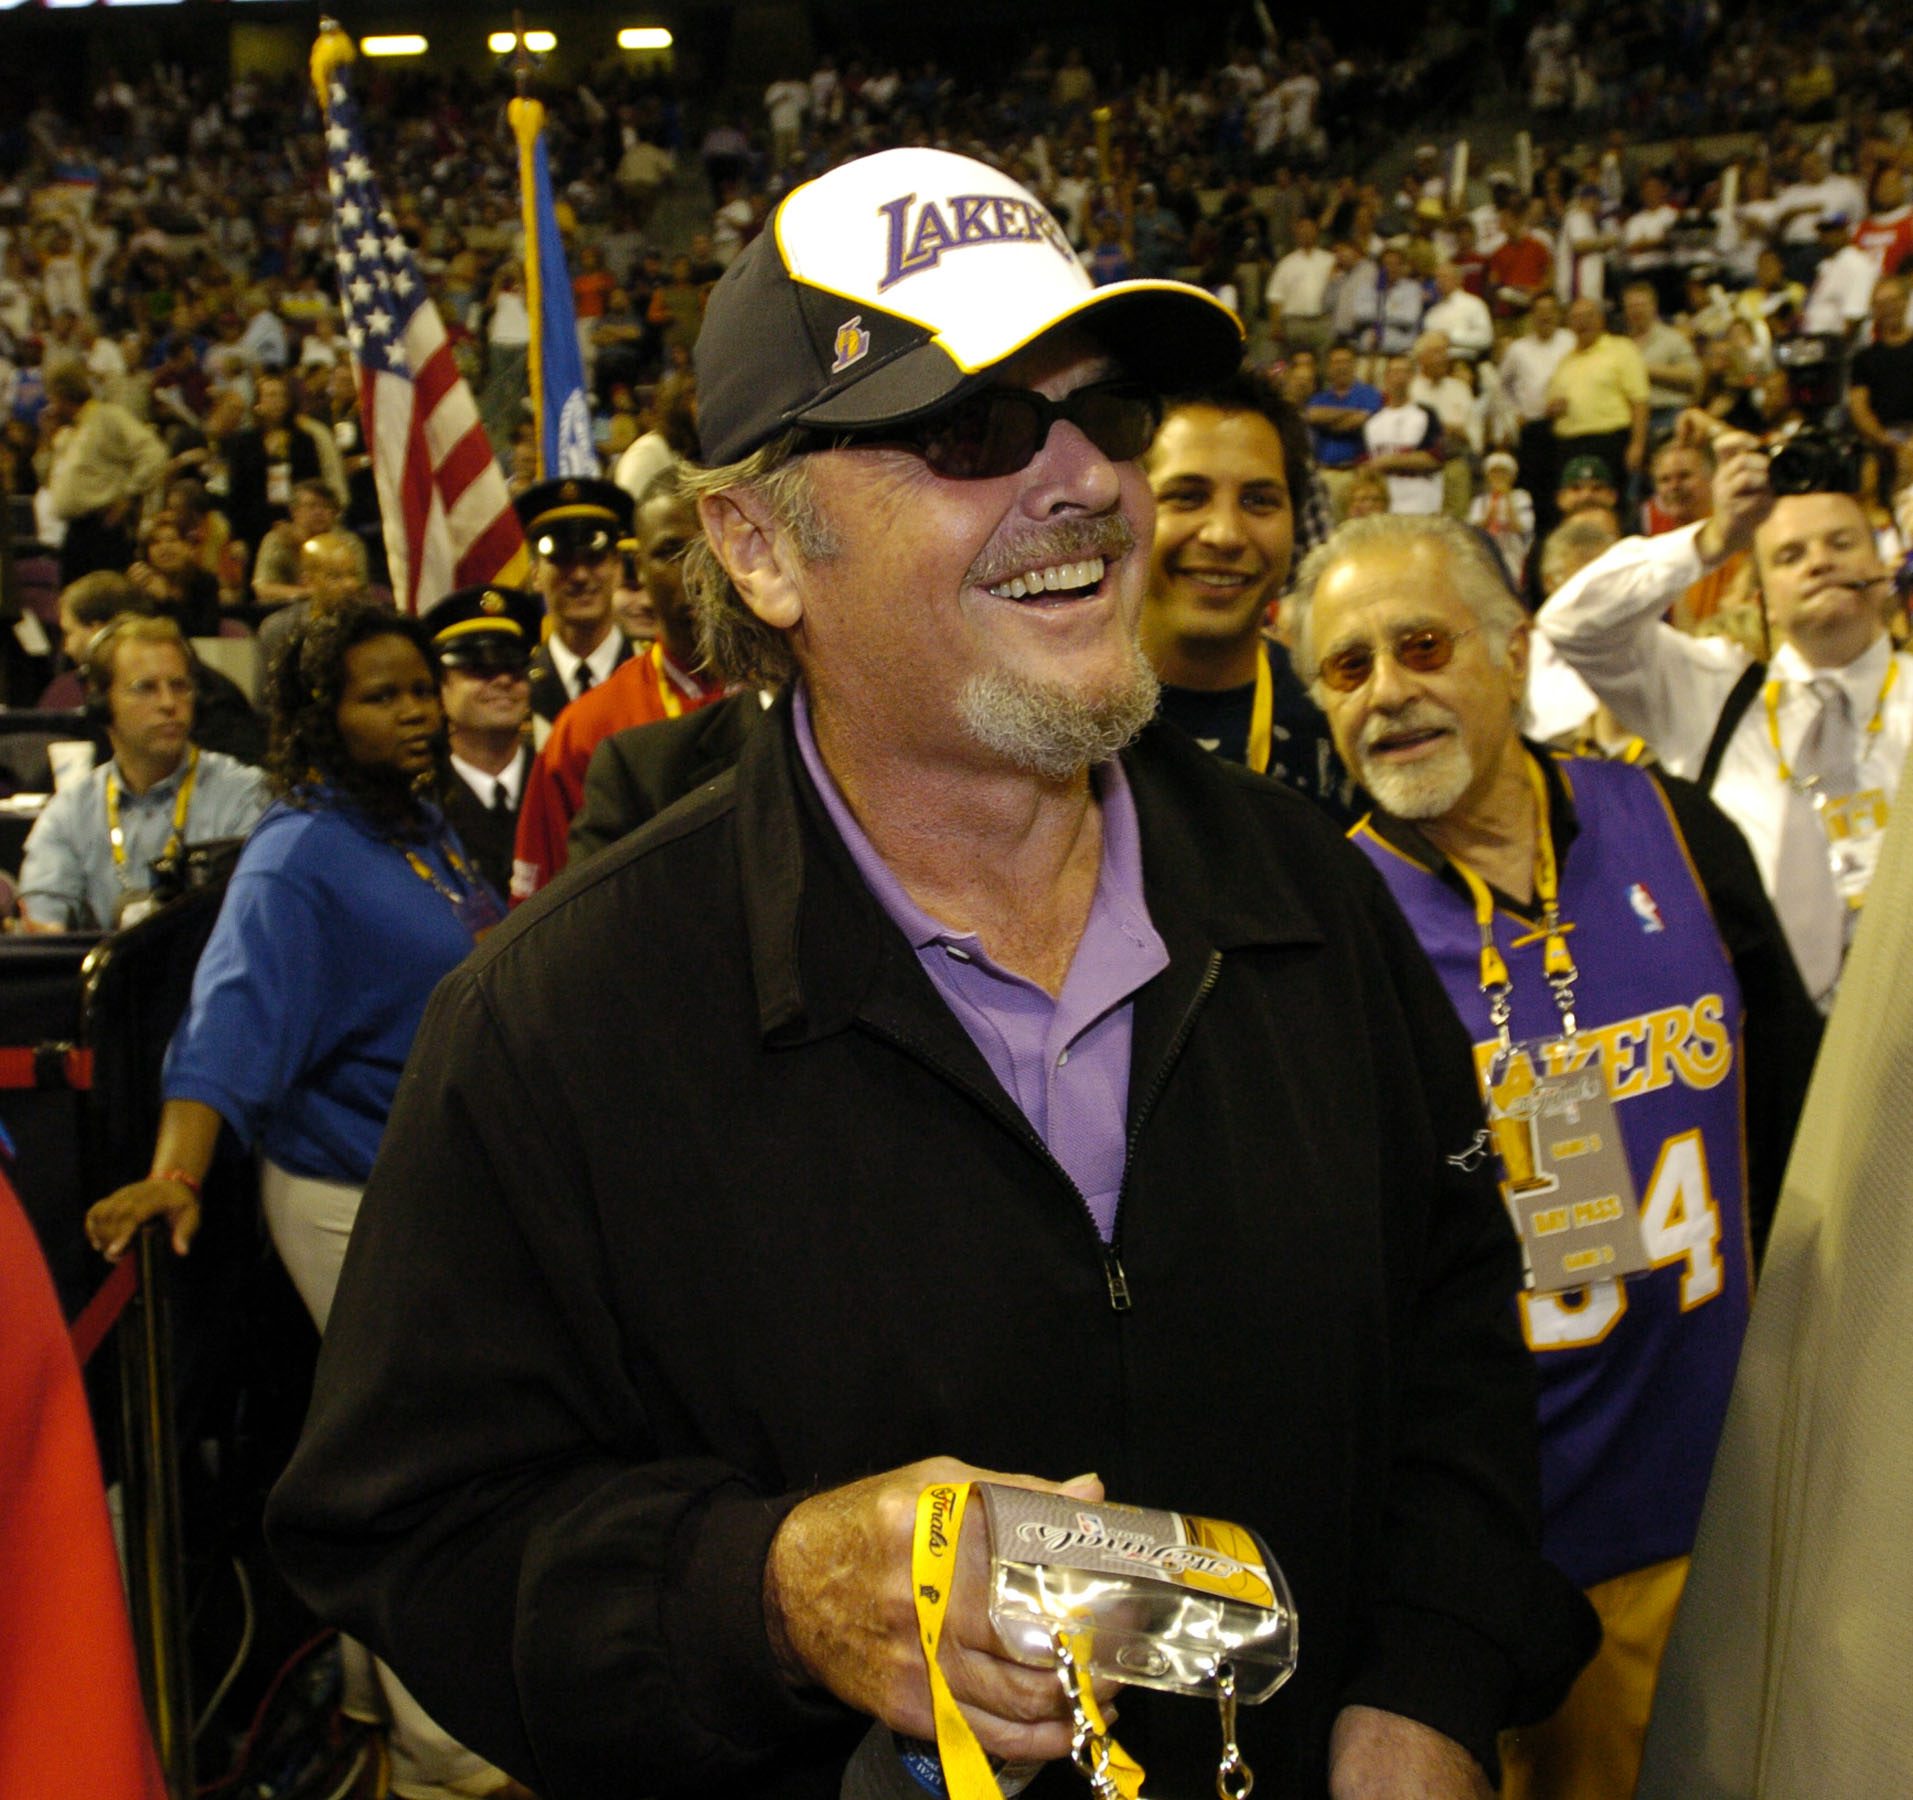 Jack Nicholson. En sann Lakers-anhängare. Han har haft säsongsbiljetter sedan 70-talet och har även firat födelsedagar på Staples Center. Äkta!